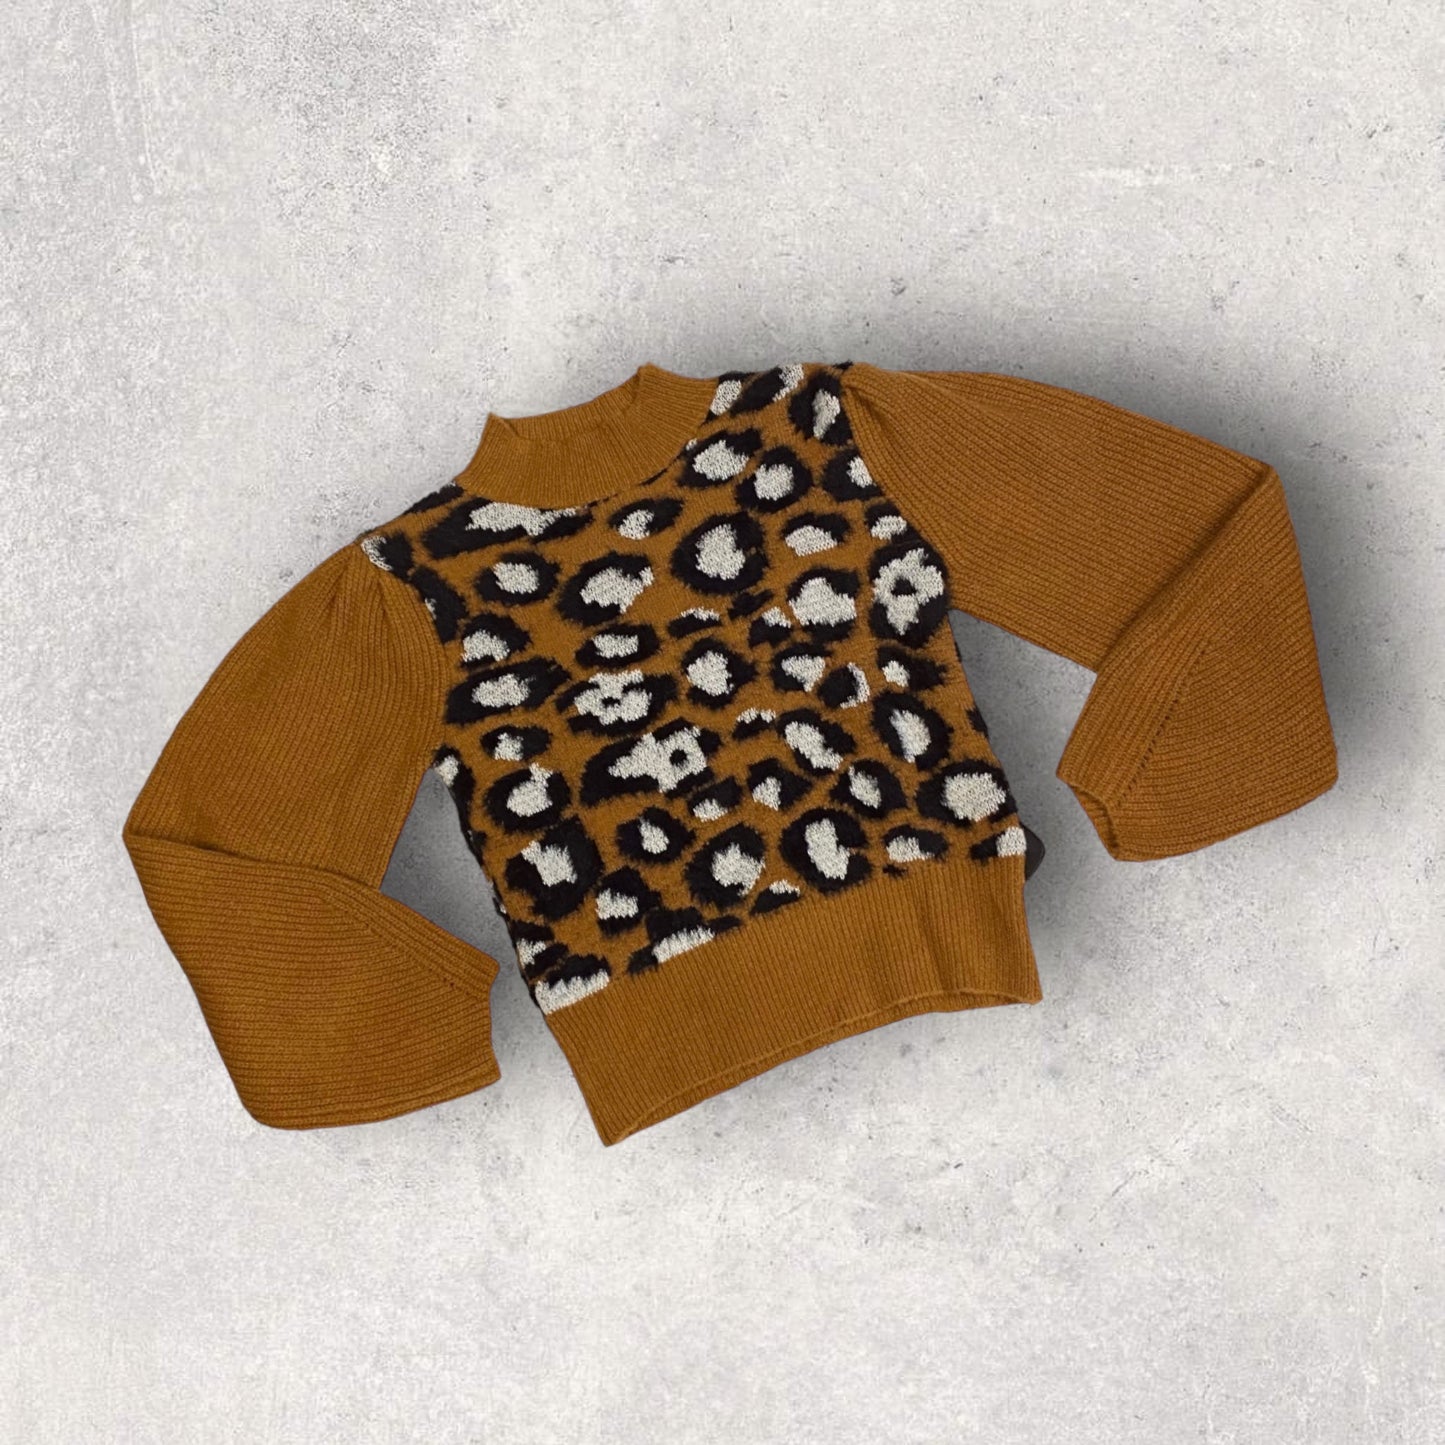 Sweater By MOLLY BRACKEN  Size: Xs